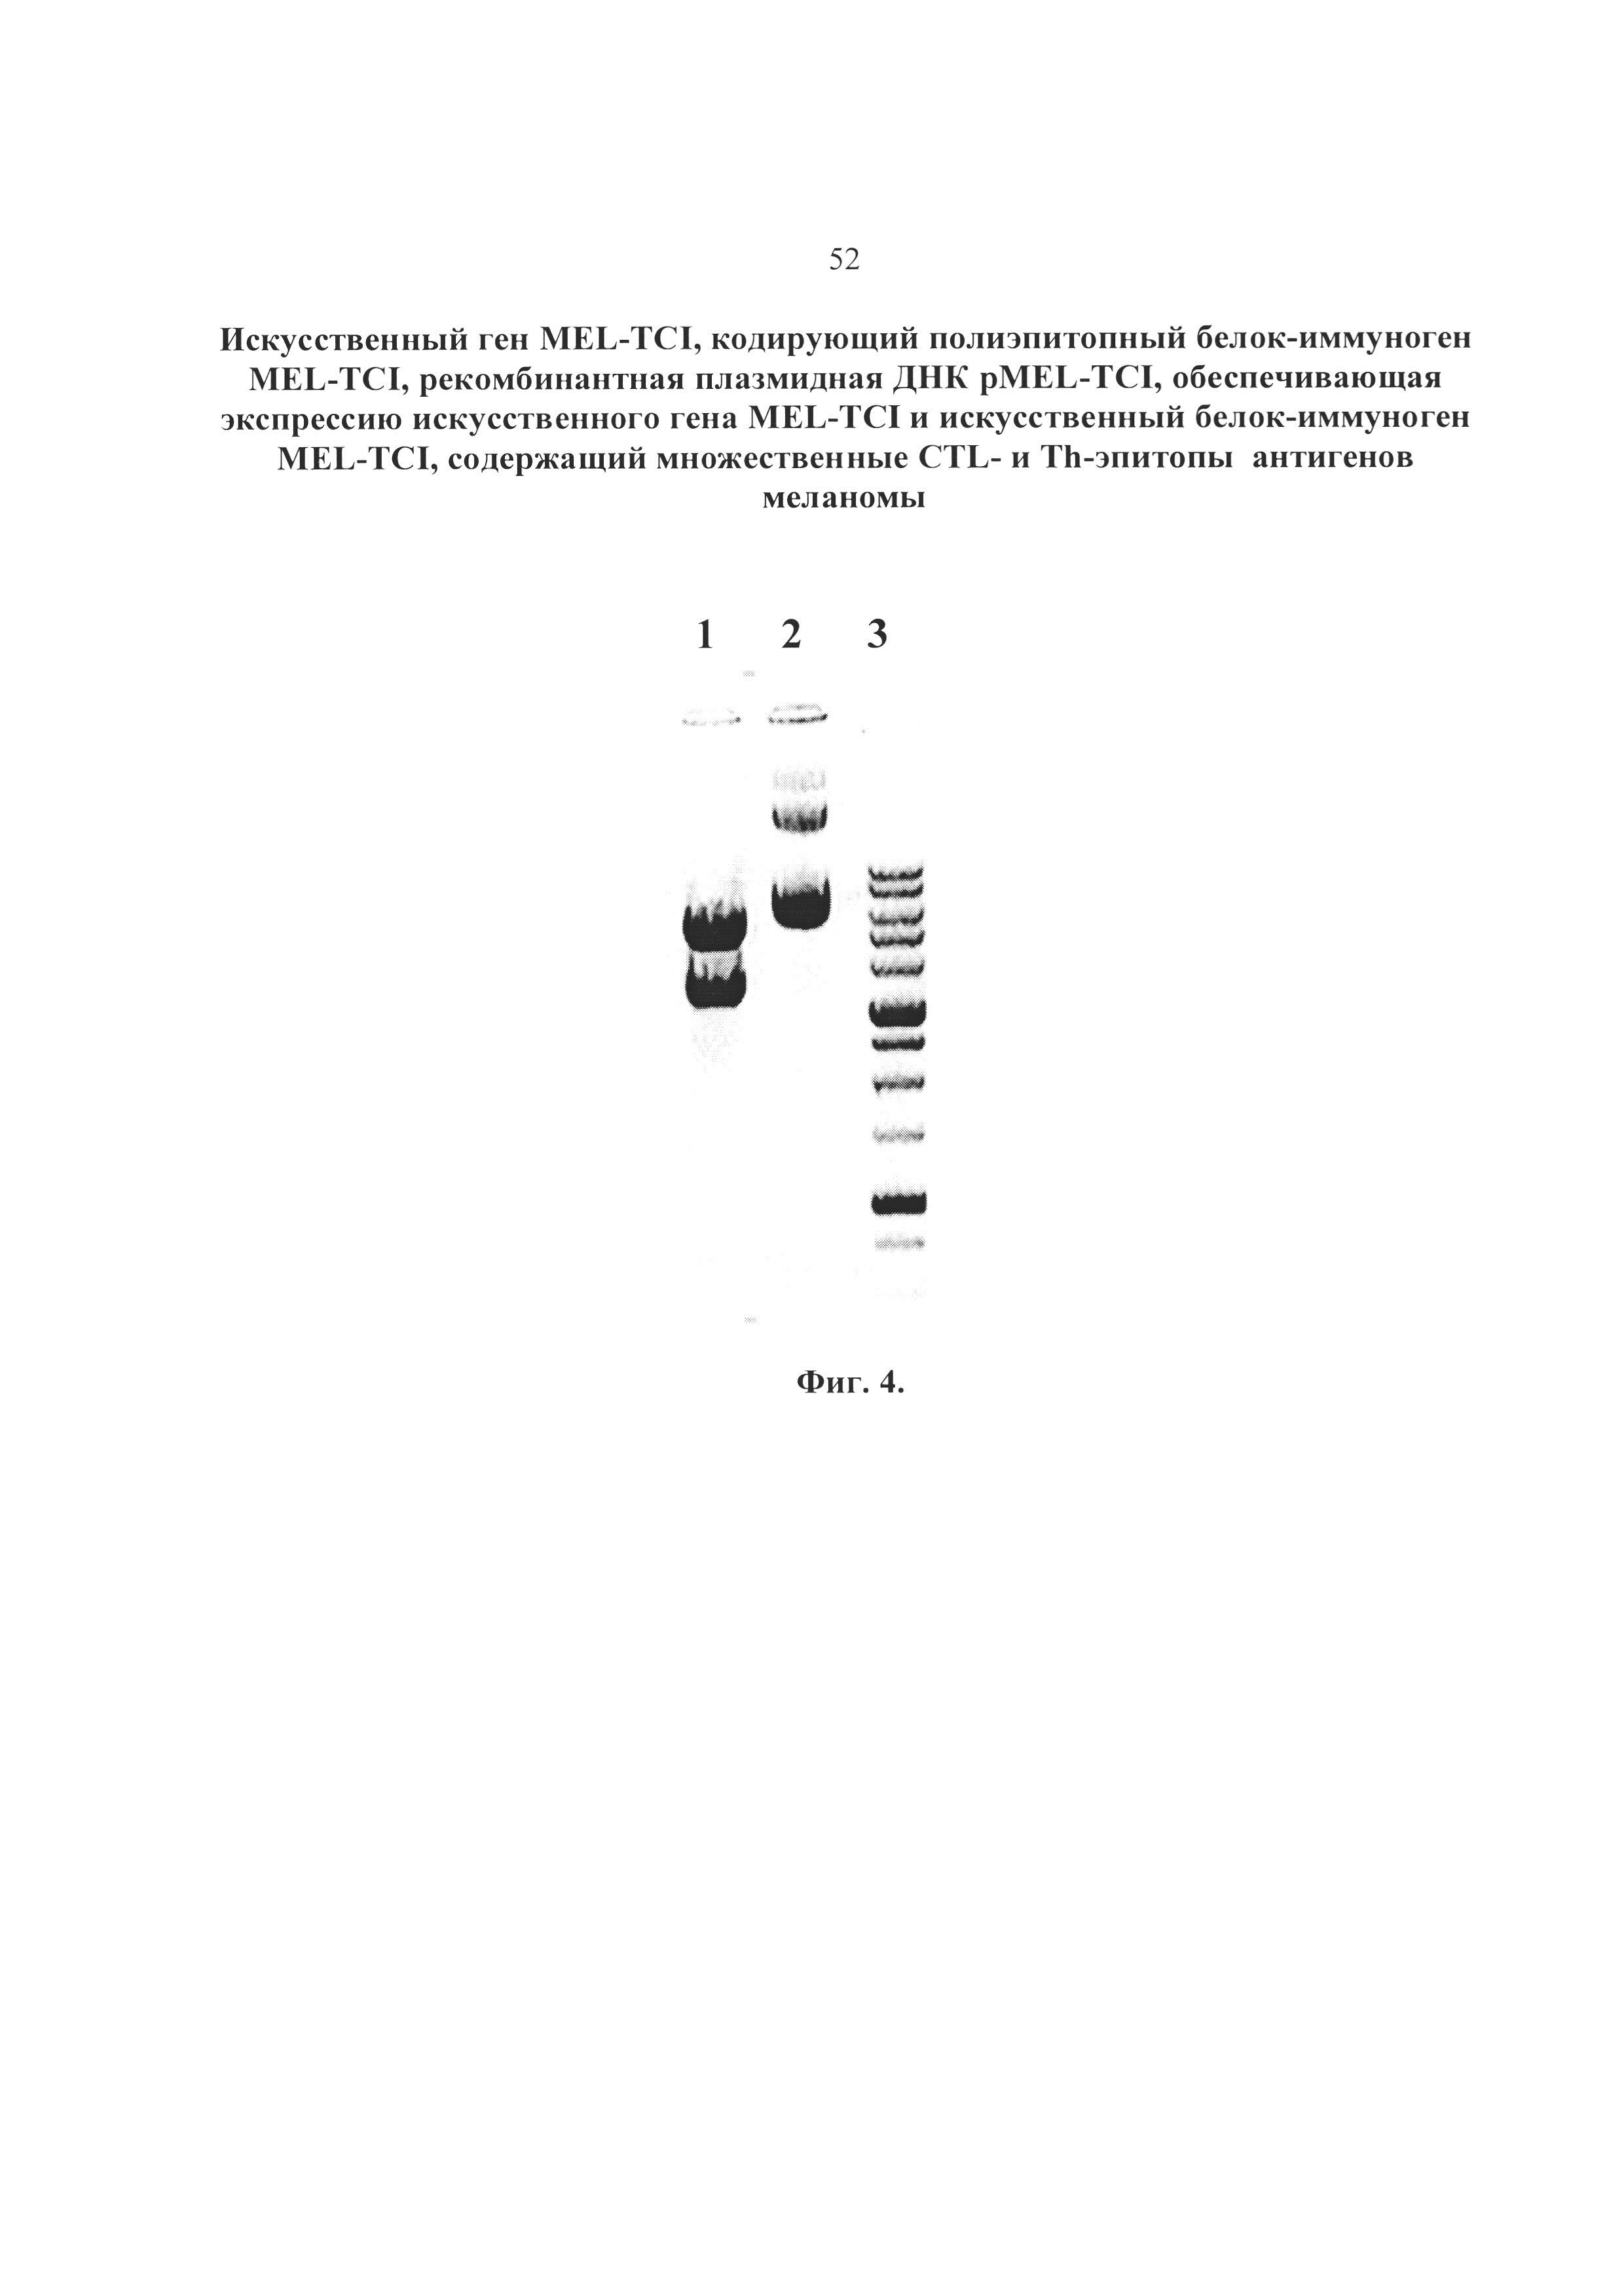 Искусственный ген MEL-TCI, кодирующий полиэпитопный белок-иммуноген MEL-TCI, рекомбинантная плазмидная ДНК pMEL-TCI, обеспечивающая экспрессию искусственного гена MEL-TCI и искусственный белок-иммуноген MEL-TCI, содержащий CTL- и Th-эпитопы антигенов меланомы, рестриктированные множественными аллелями HLA I и II класса